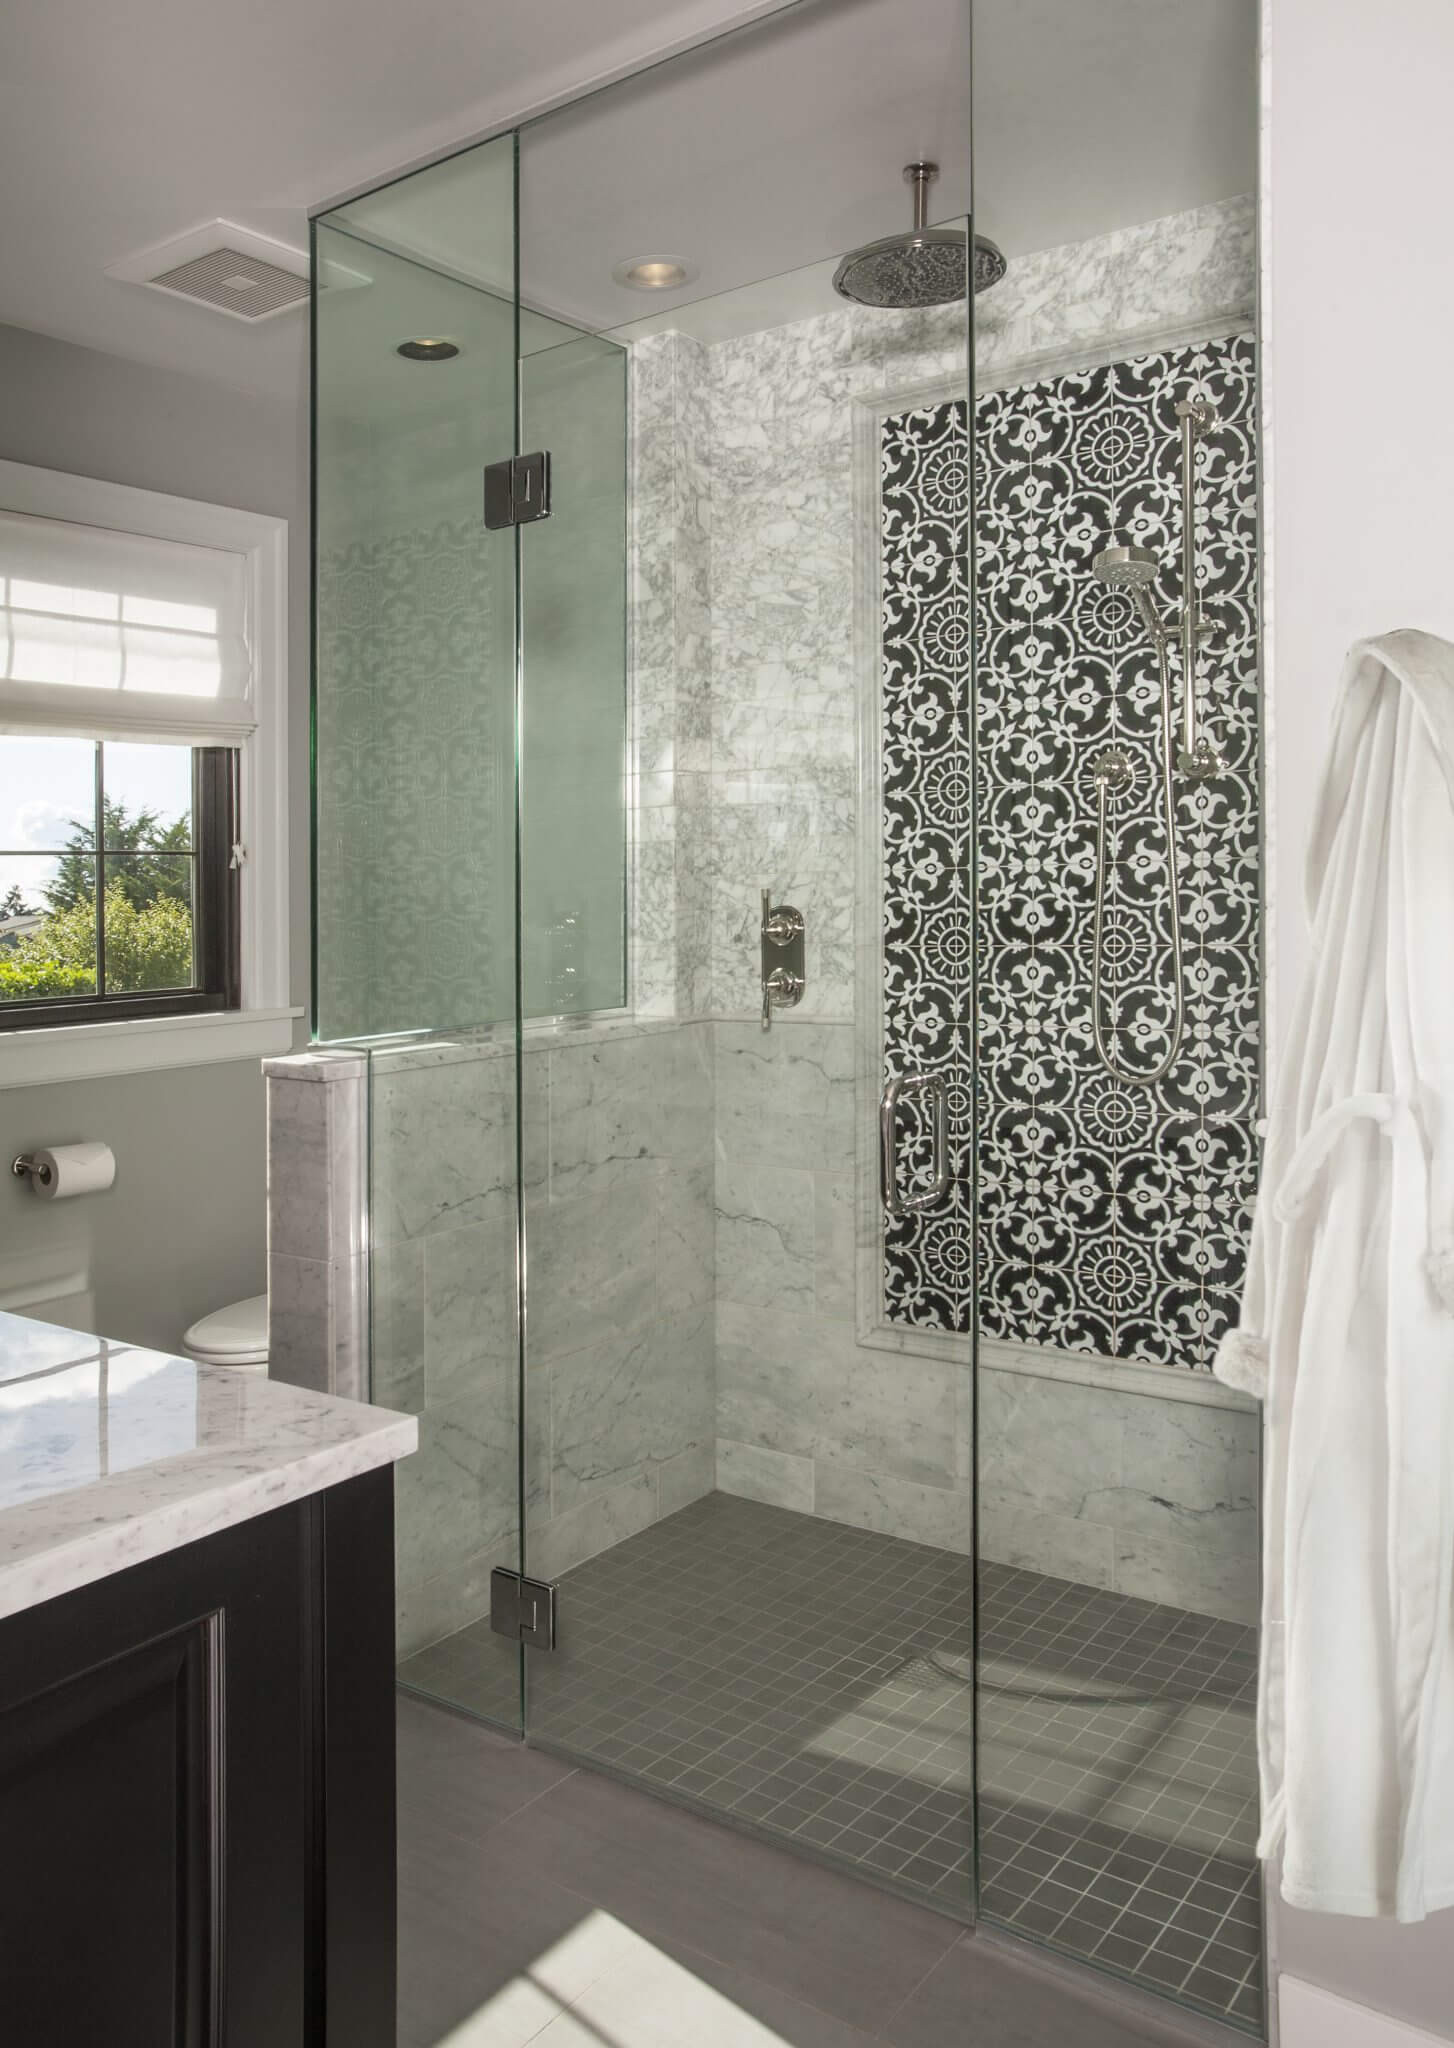 Bathroom Shower Tile Gallery
 28 Best Bathroom Shower Tile Designs 2018 Interior